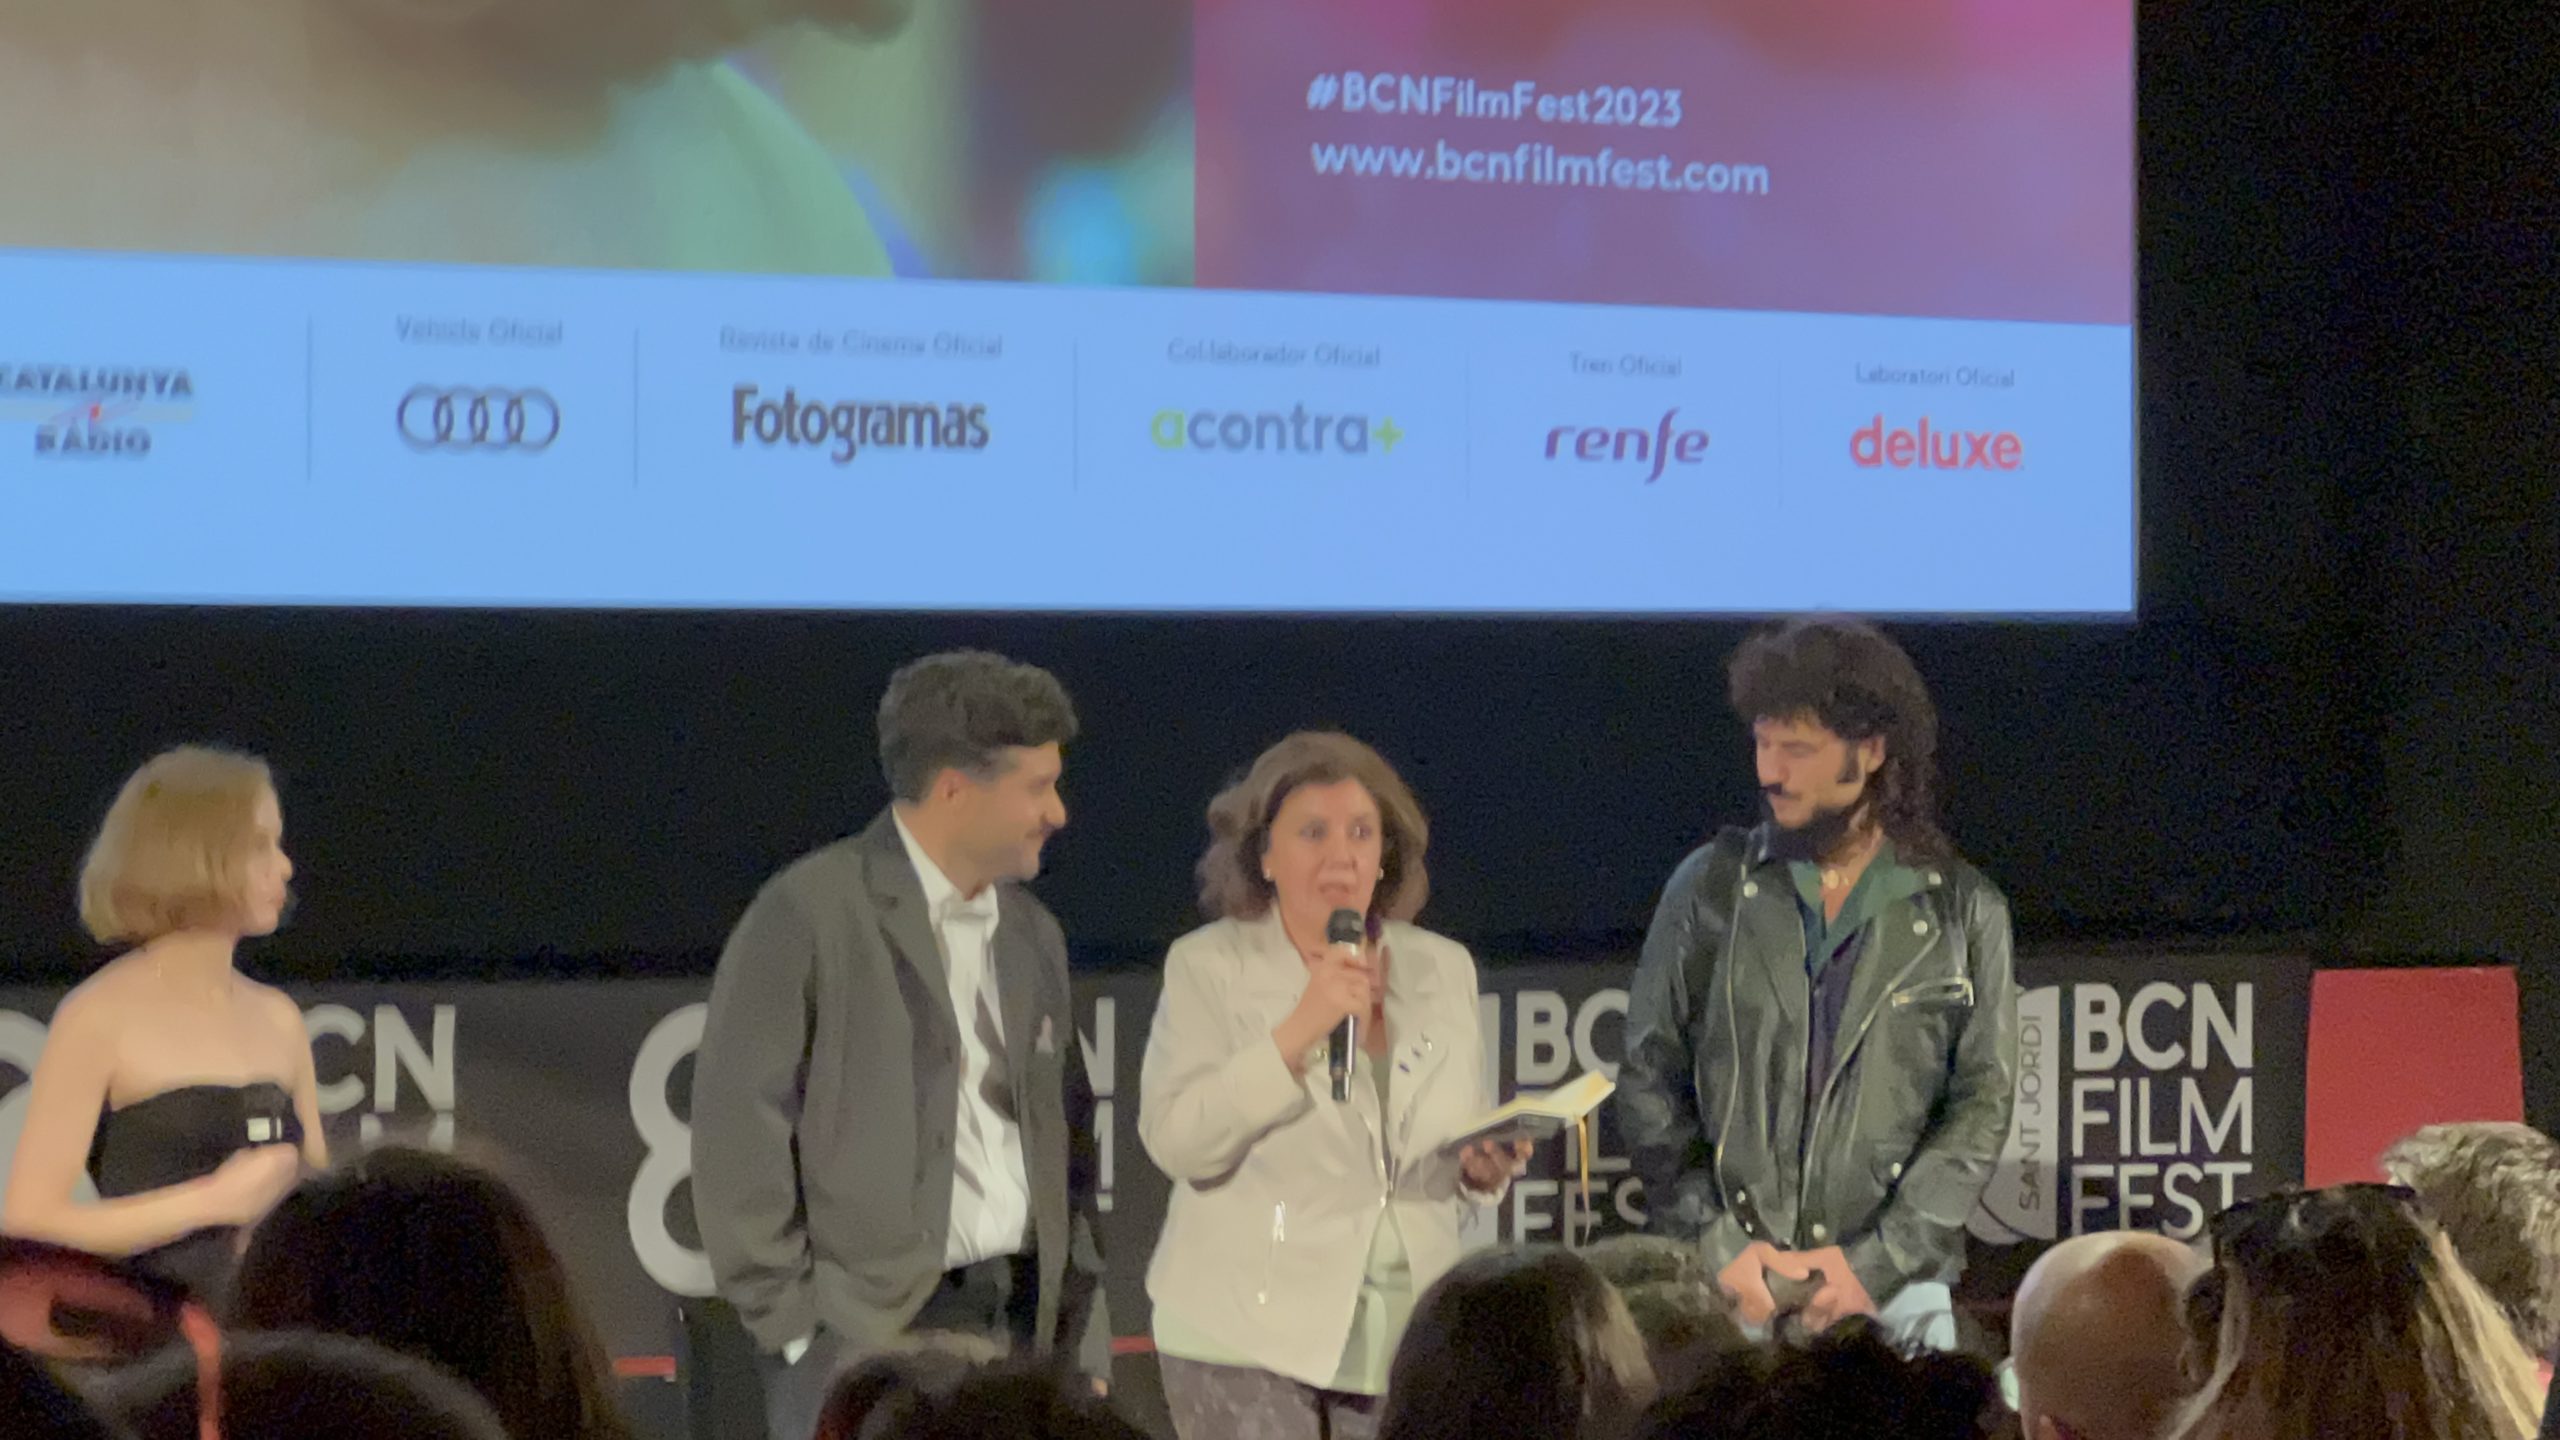 BCN Film Fest 2023: La Desconocida, presentación + Q&A